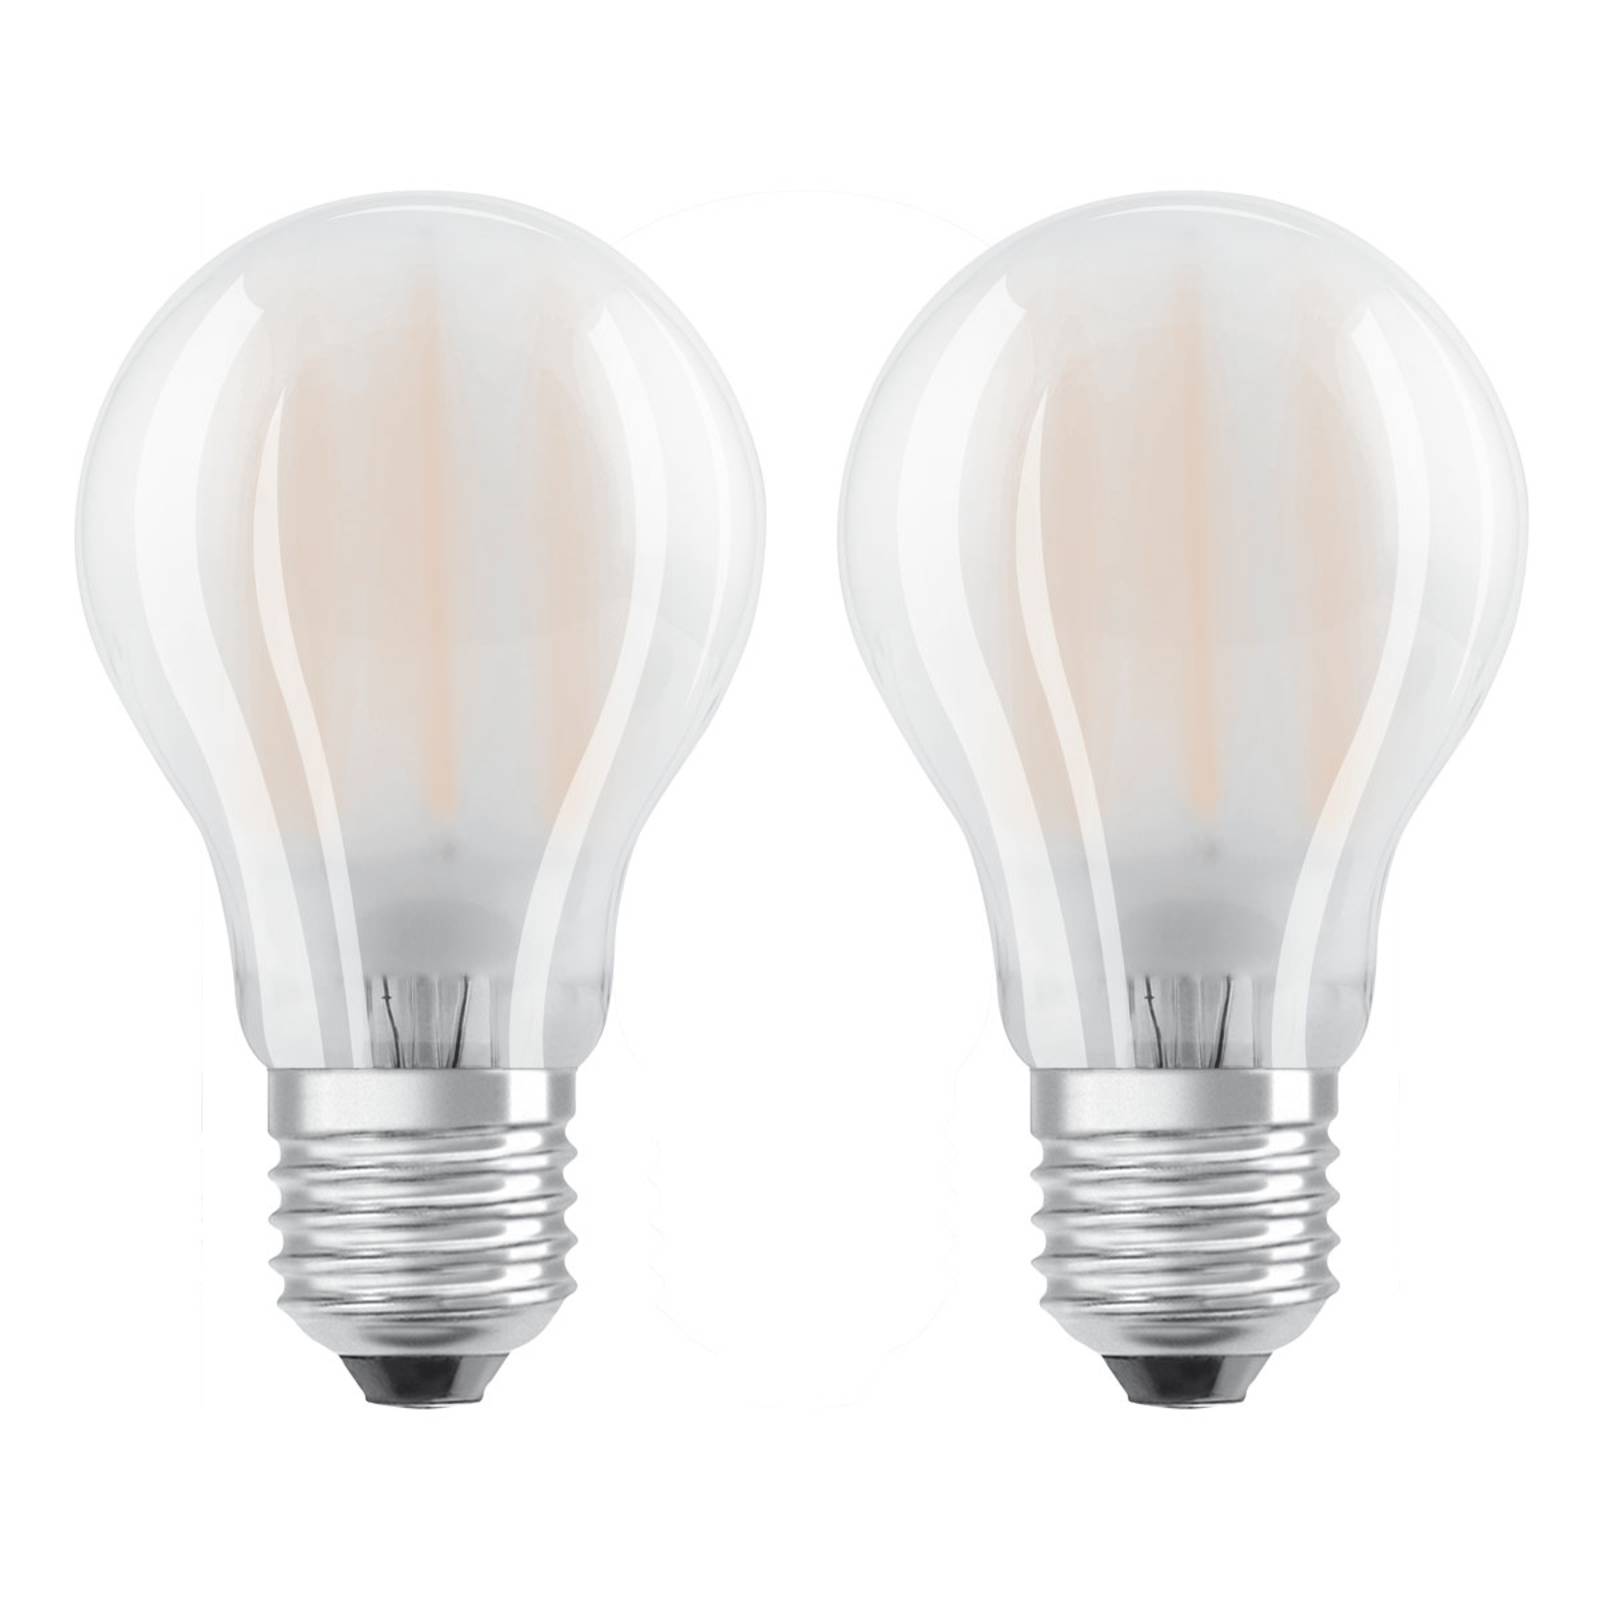 OSRAM ampoule LED E27 4 W blanc chaud lot de 2